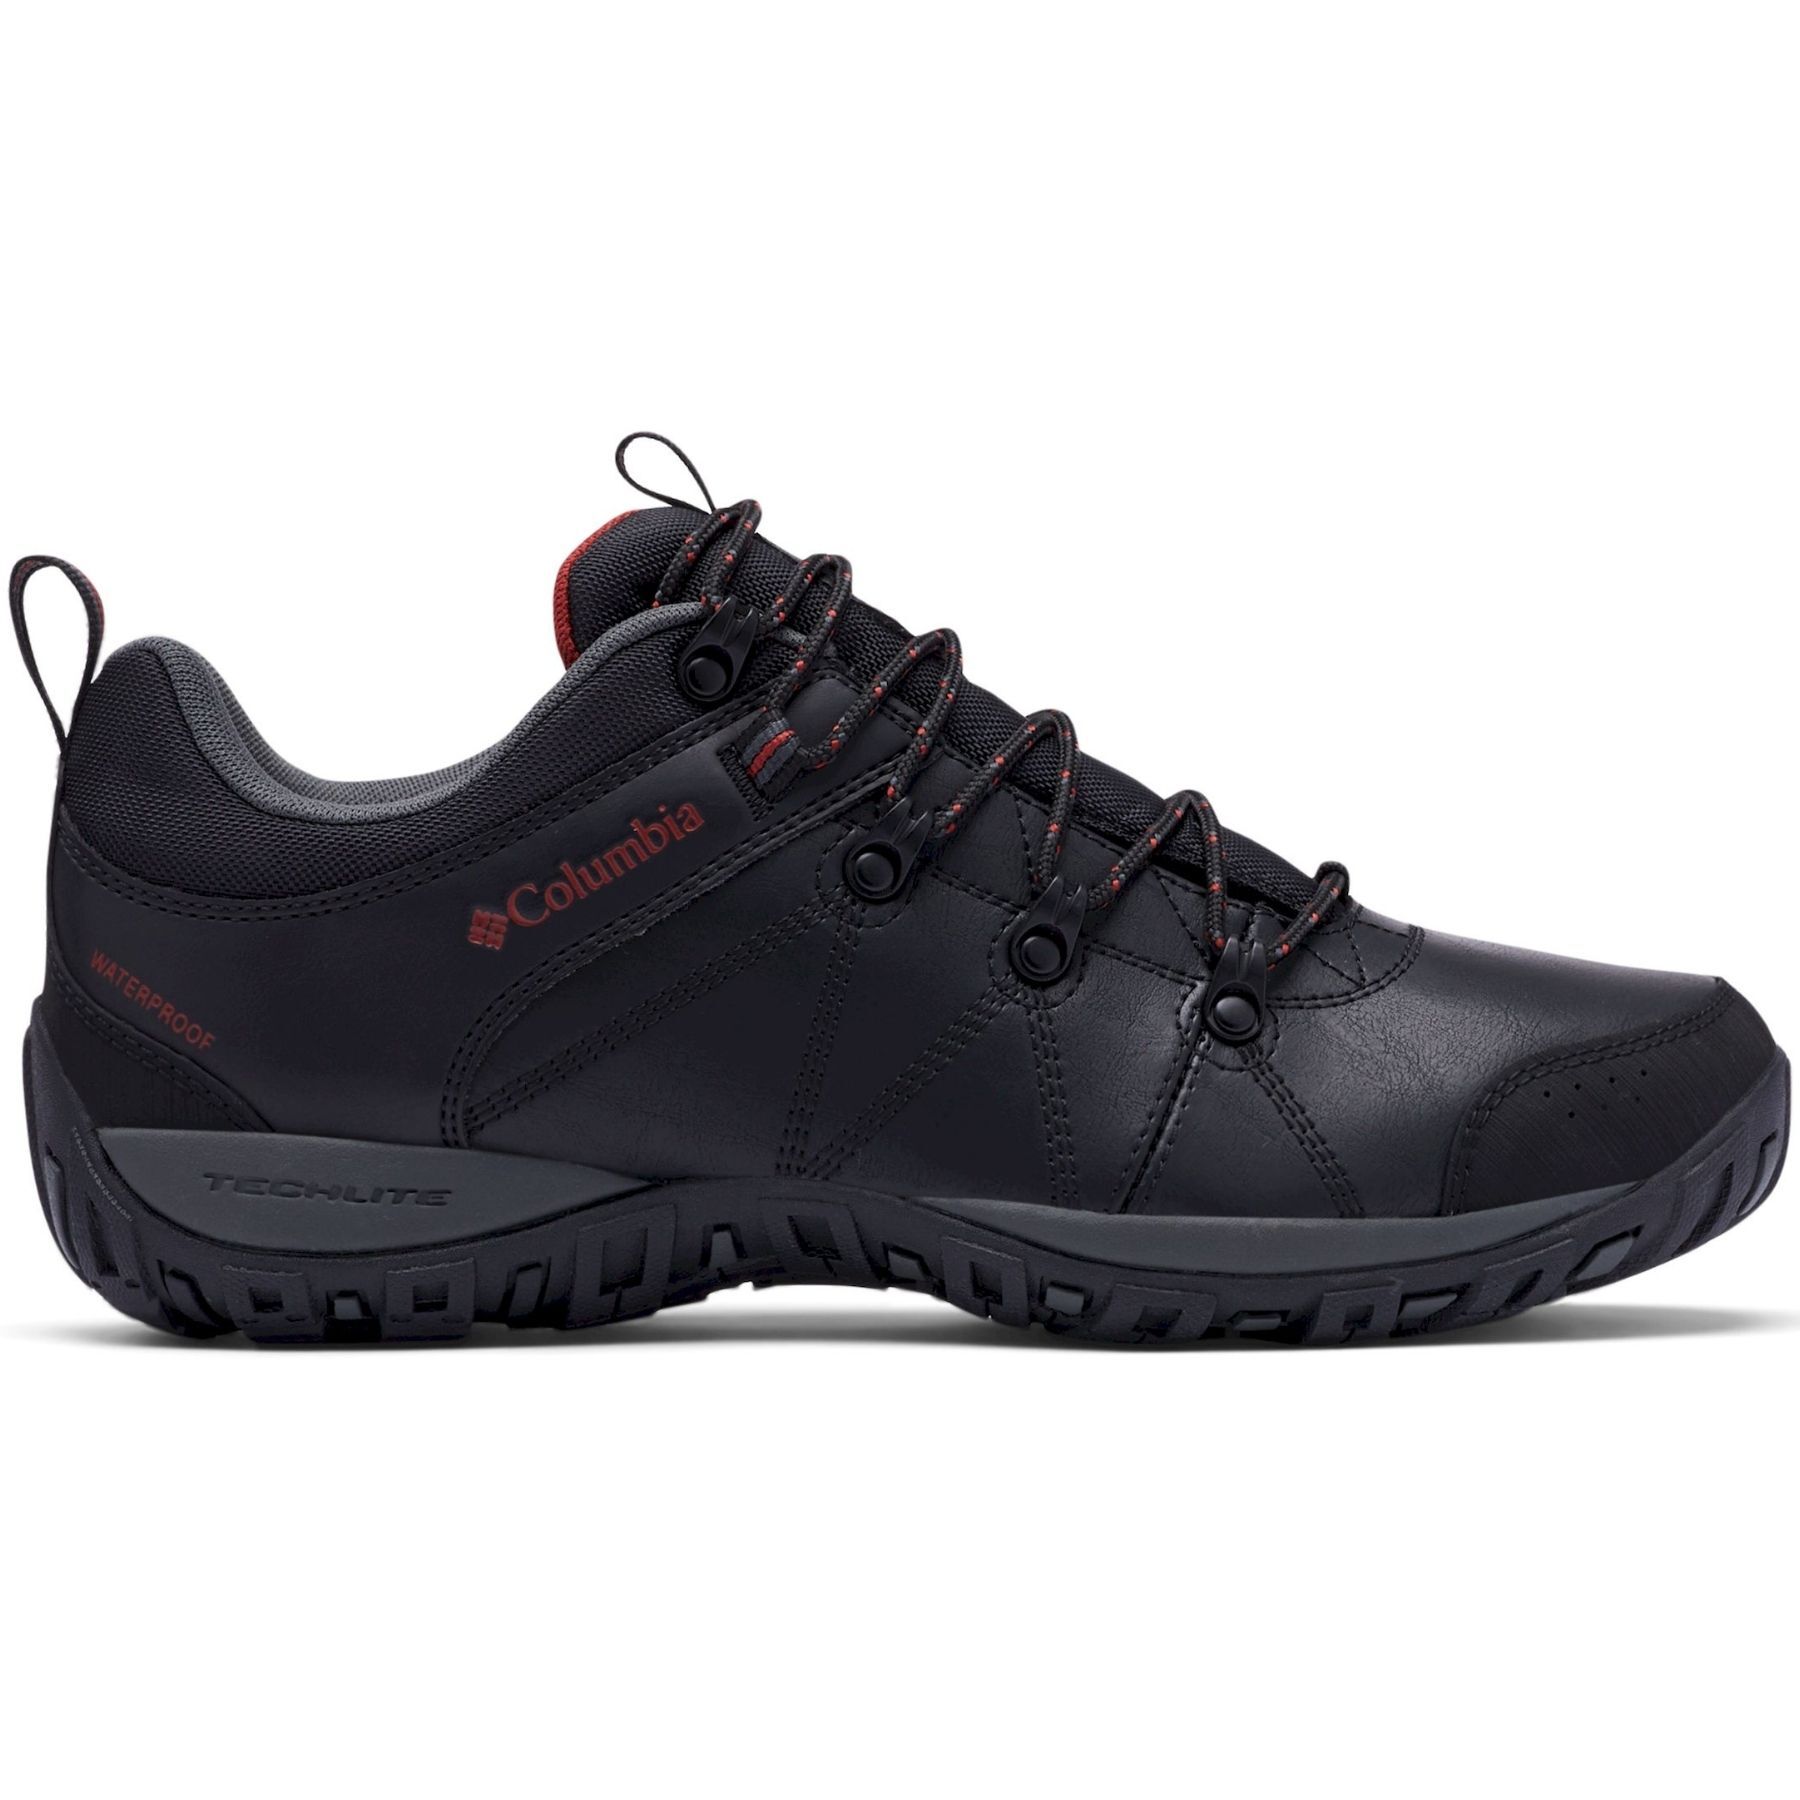 Columbia - Peakfreak Venture Waterproof - Walking Boots - Men's